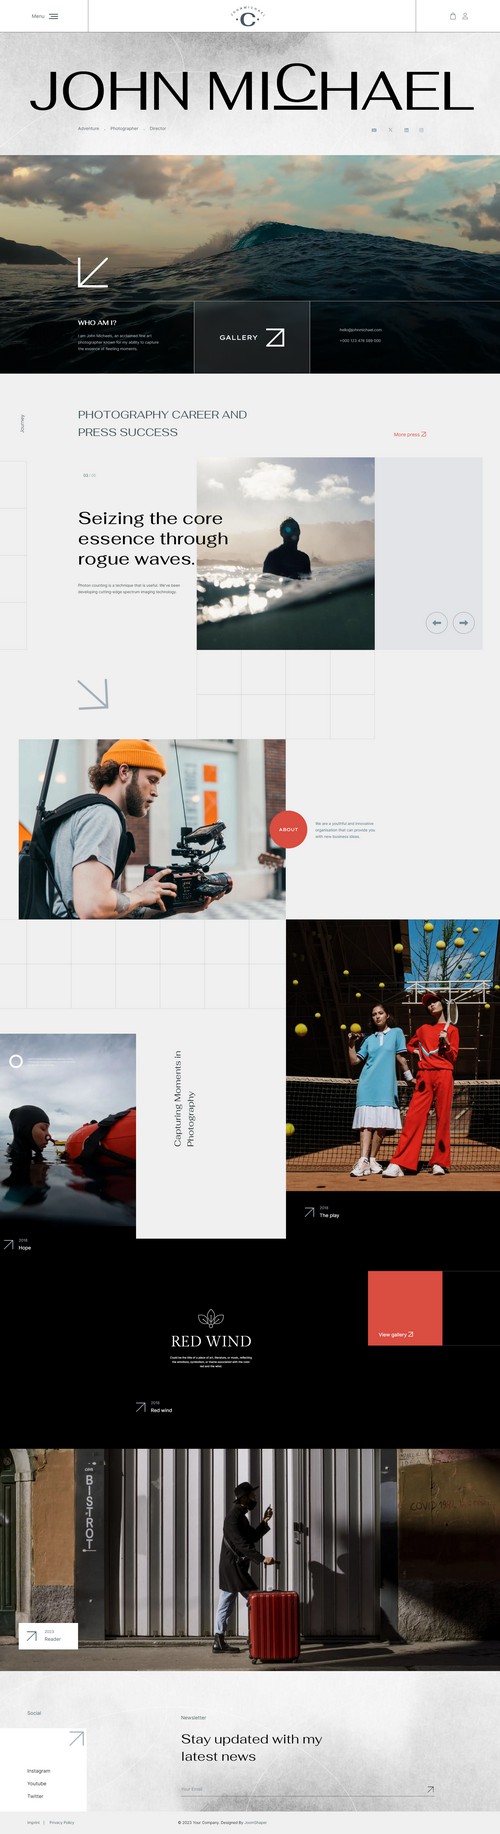 Kreativa - online store-based Joomla template for creative entrepreneurs